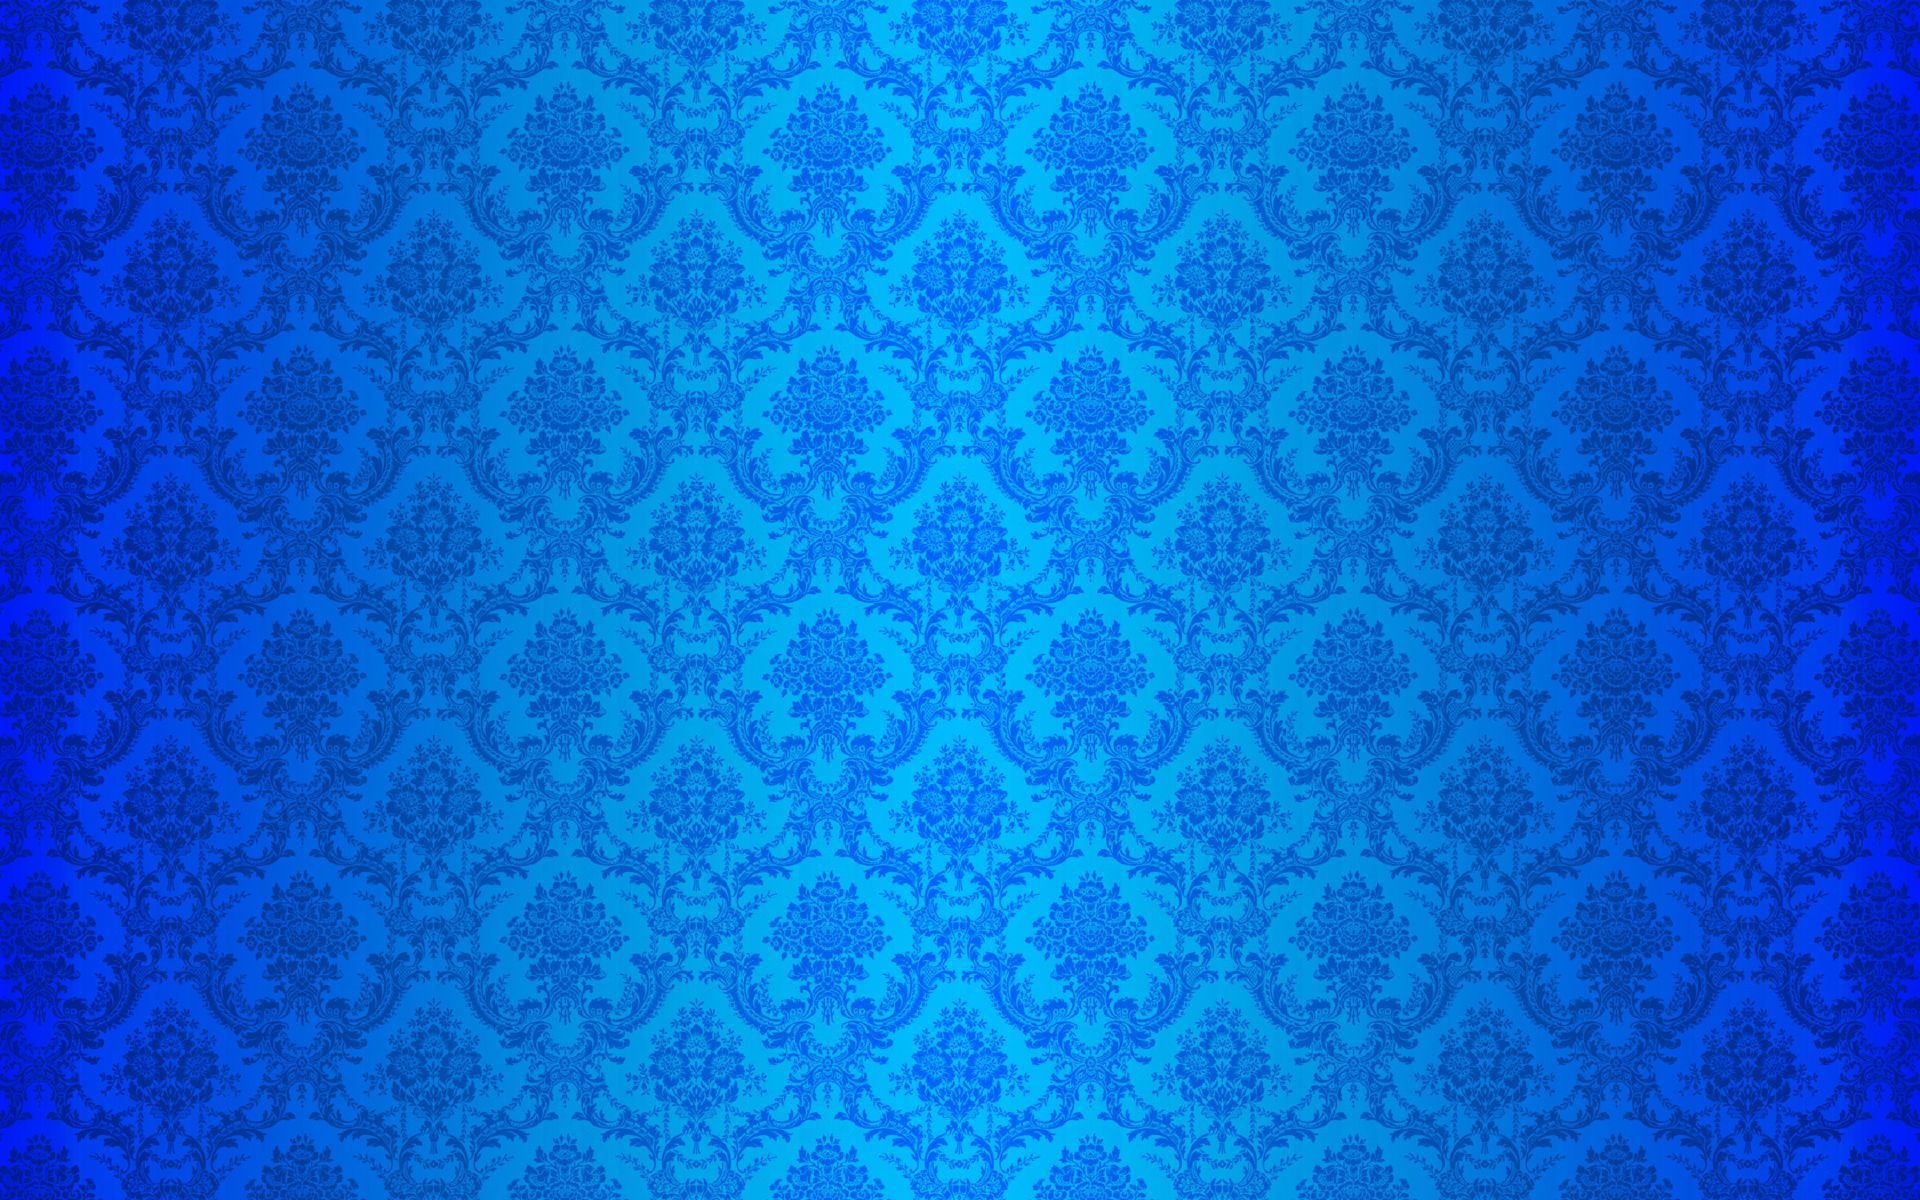 Blue Carbon Fiber Wallpaper HD. Carbon fiber wallpaper, Blue